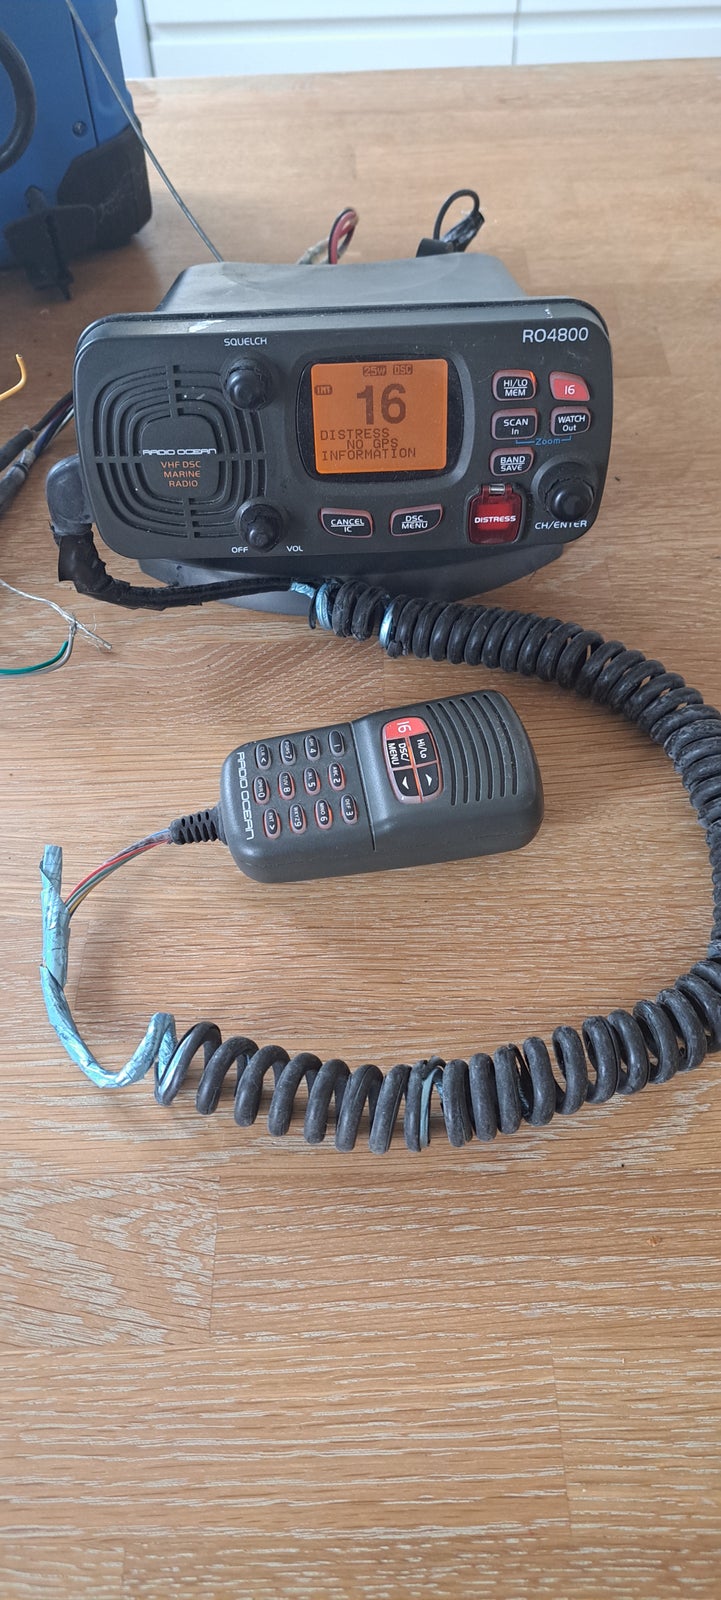 VHF radio med AIS modtager. 
RO 4800 er en god...